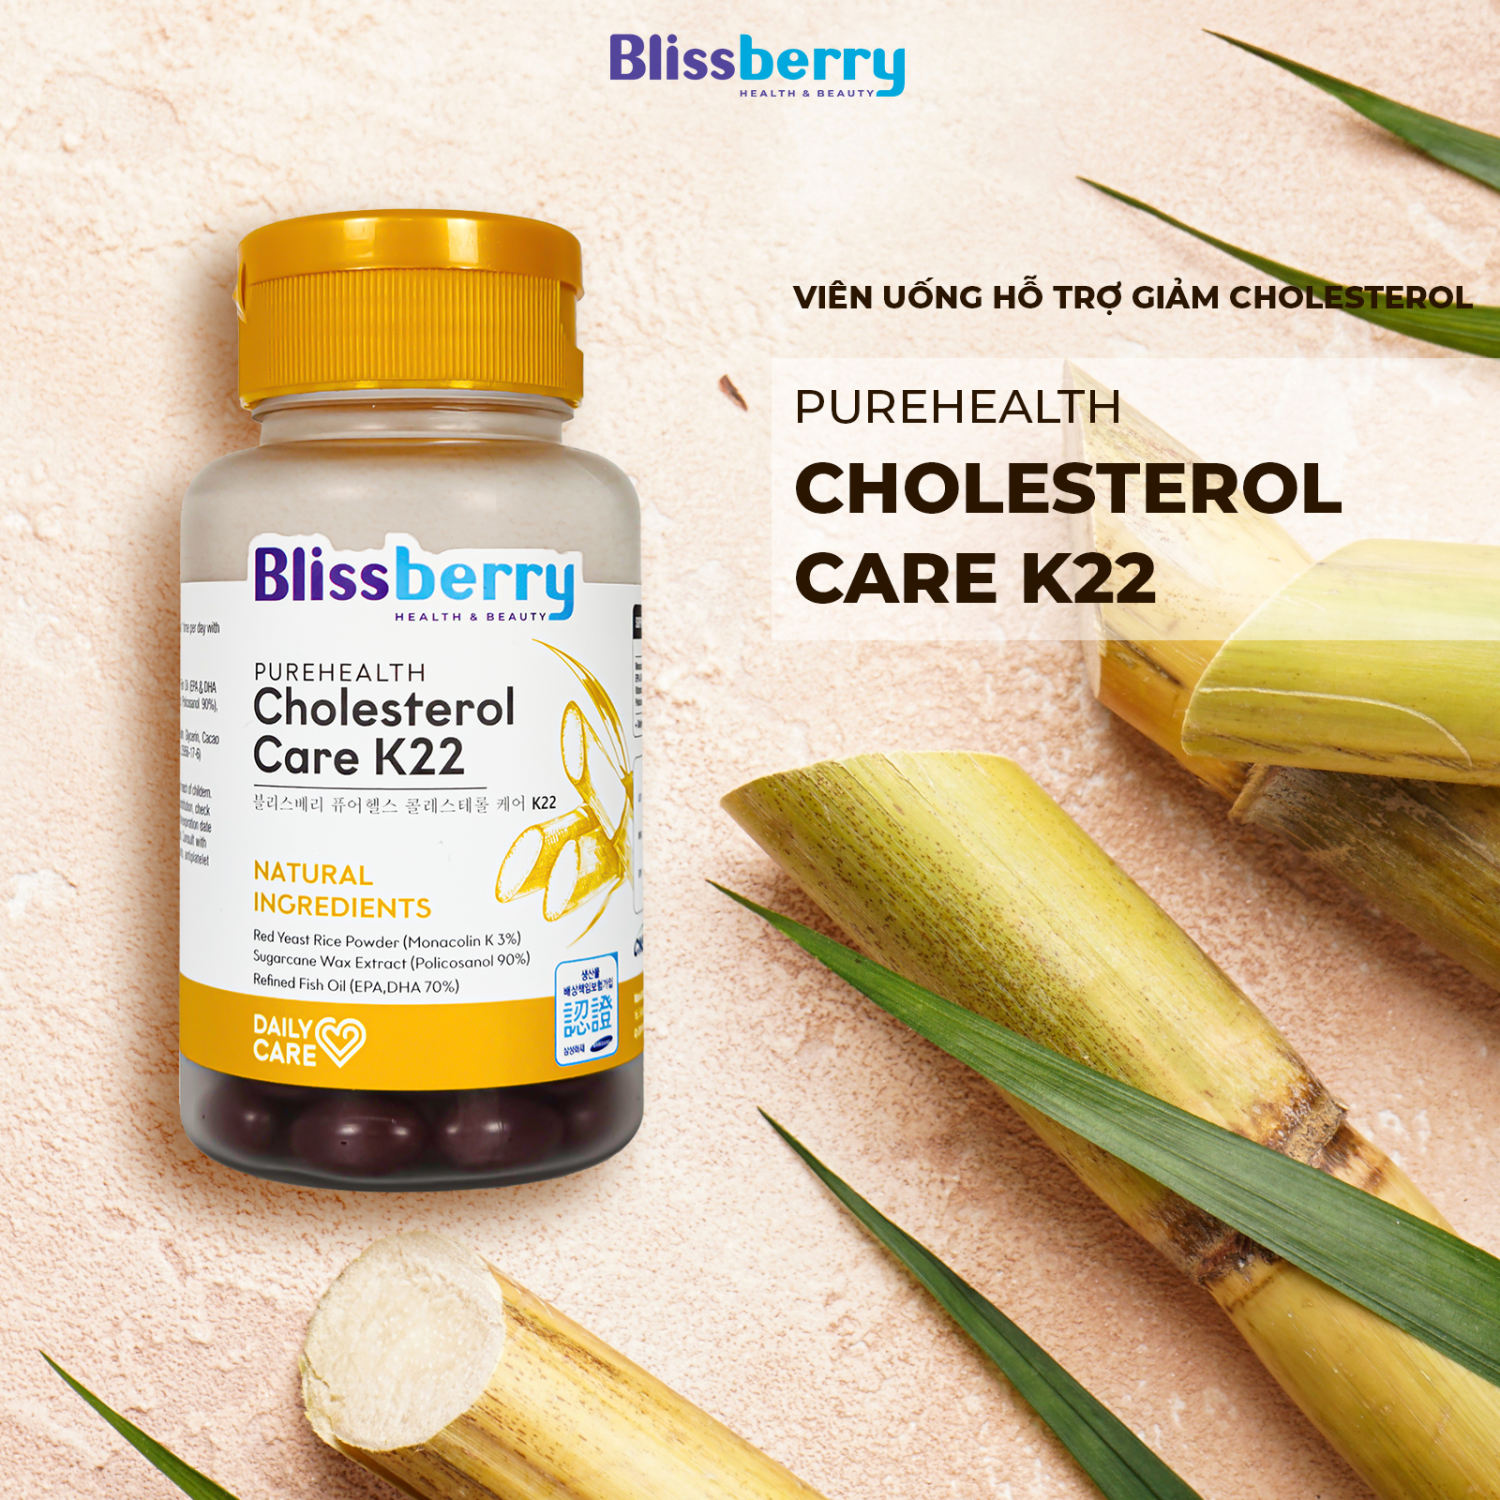 Viên uống giảm cholesterol blissberry purehealth cholesterol care k22 - ảnh sản phẩm 1